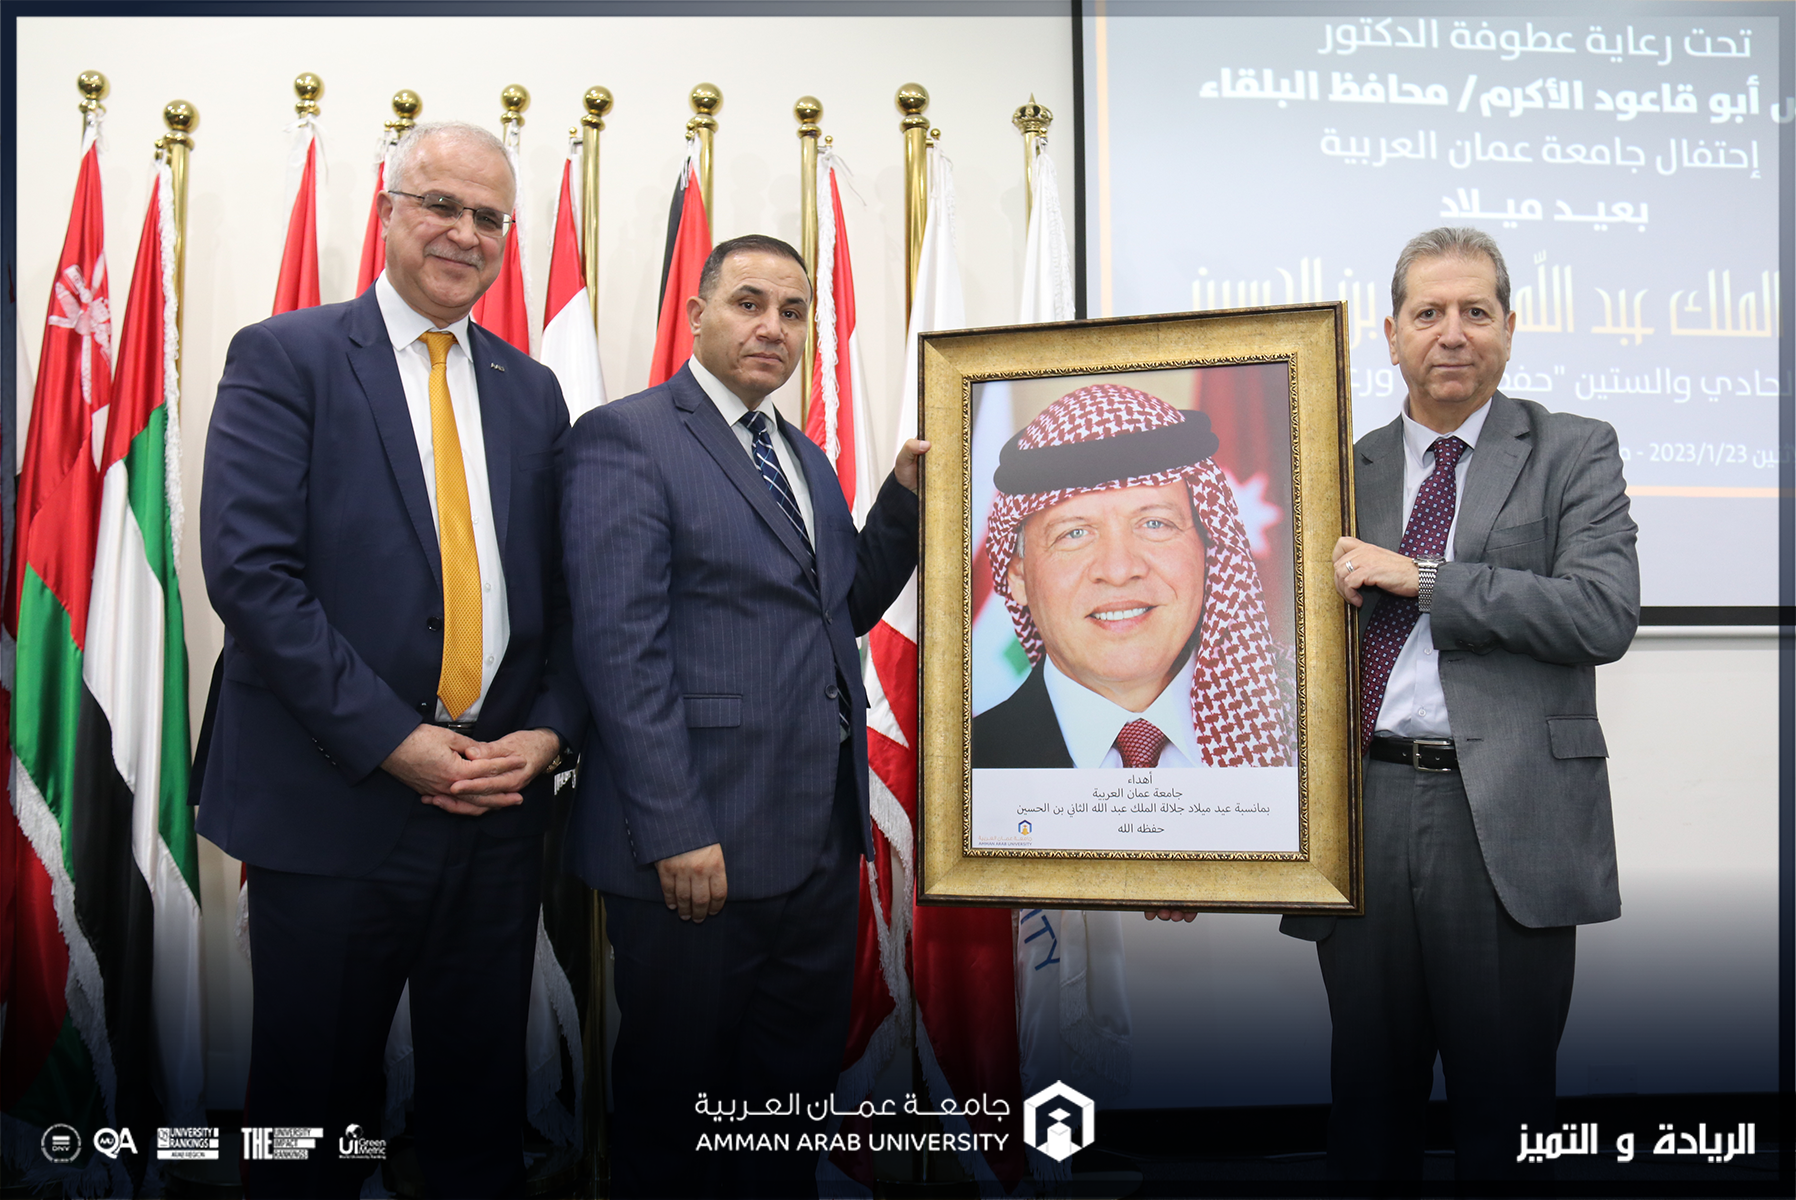 محافظ البلقاء يرعى احتفال "جامعة عمان العربية" بعيد ميلاد جلالة الملك